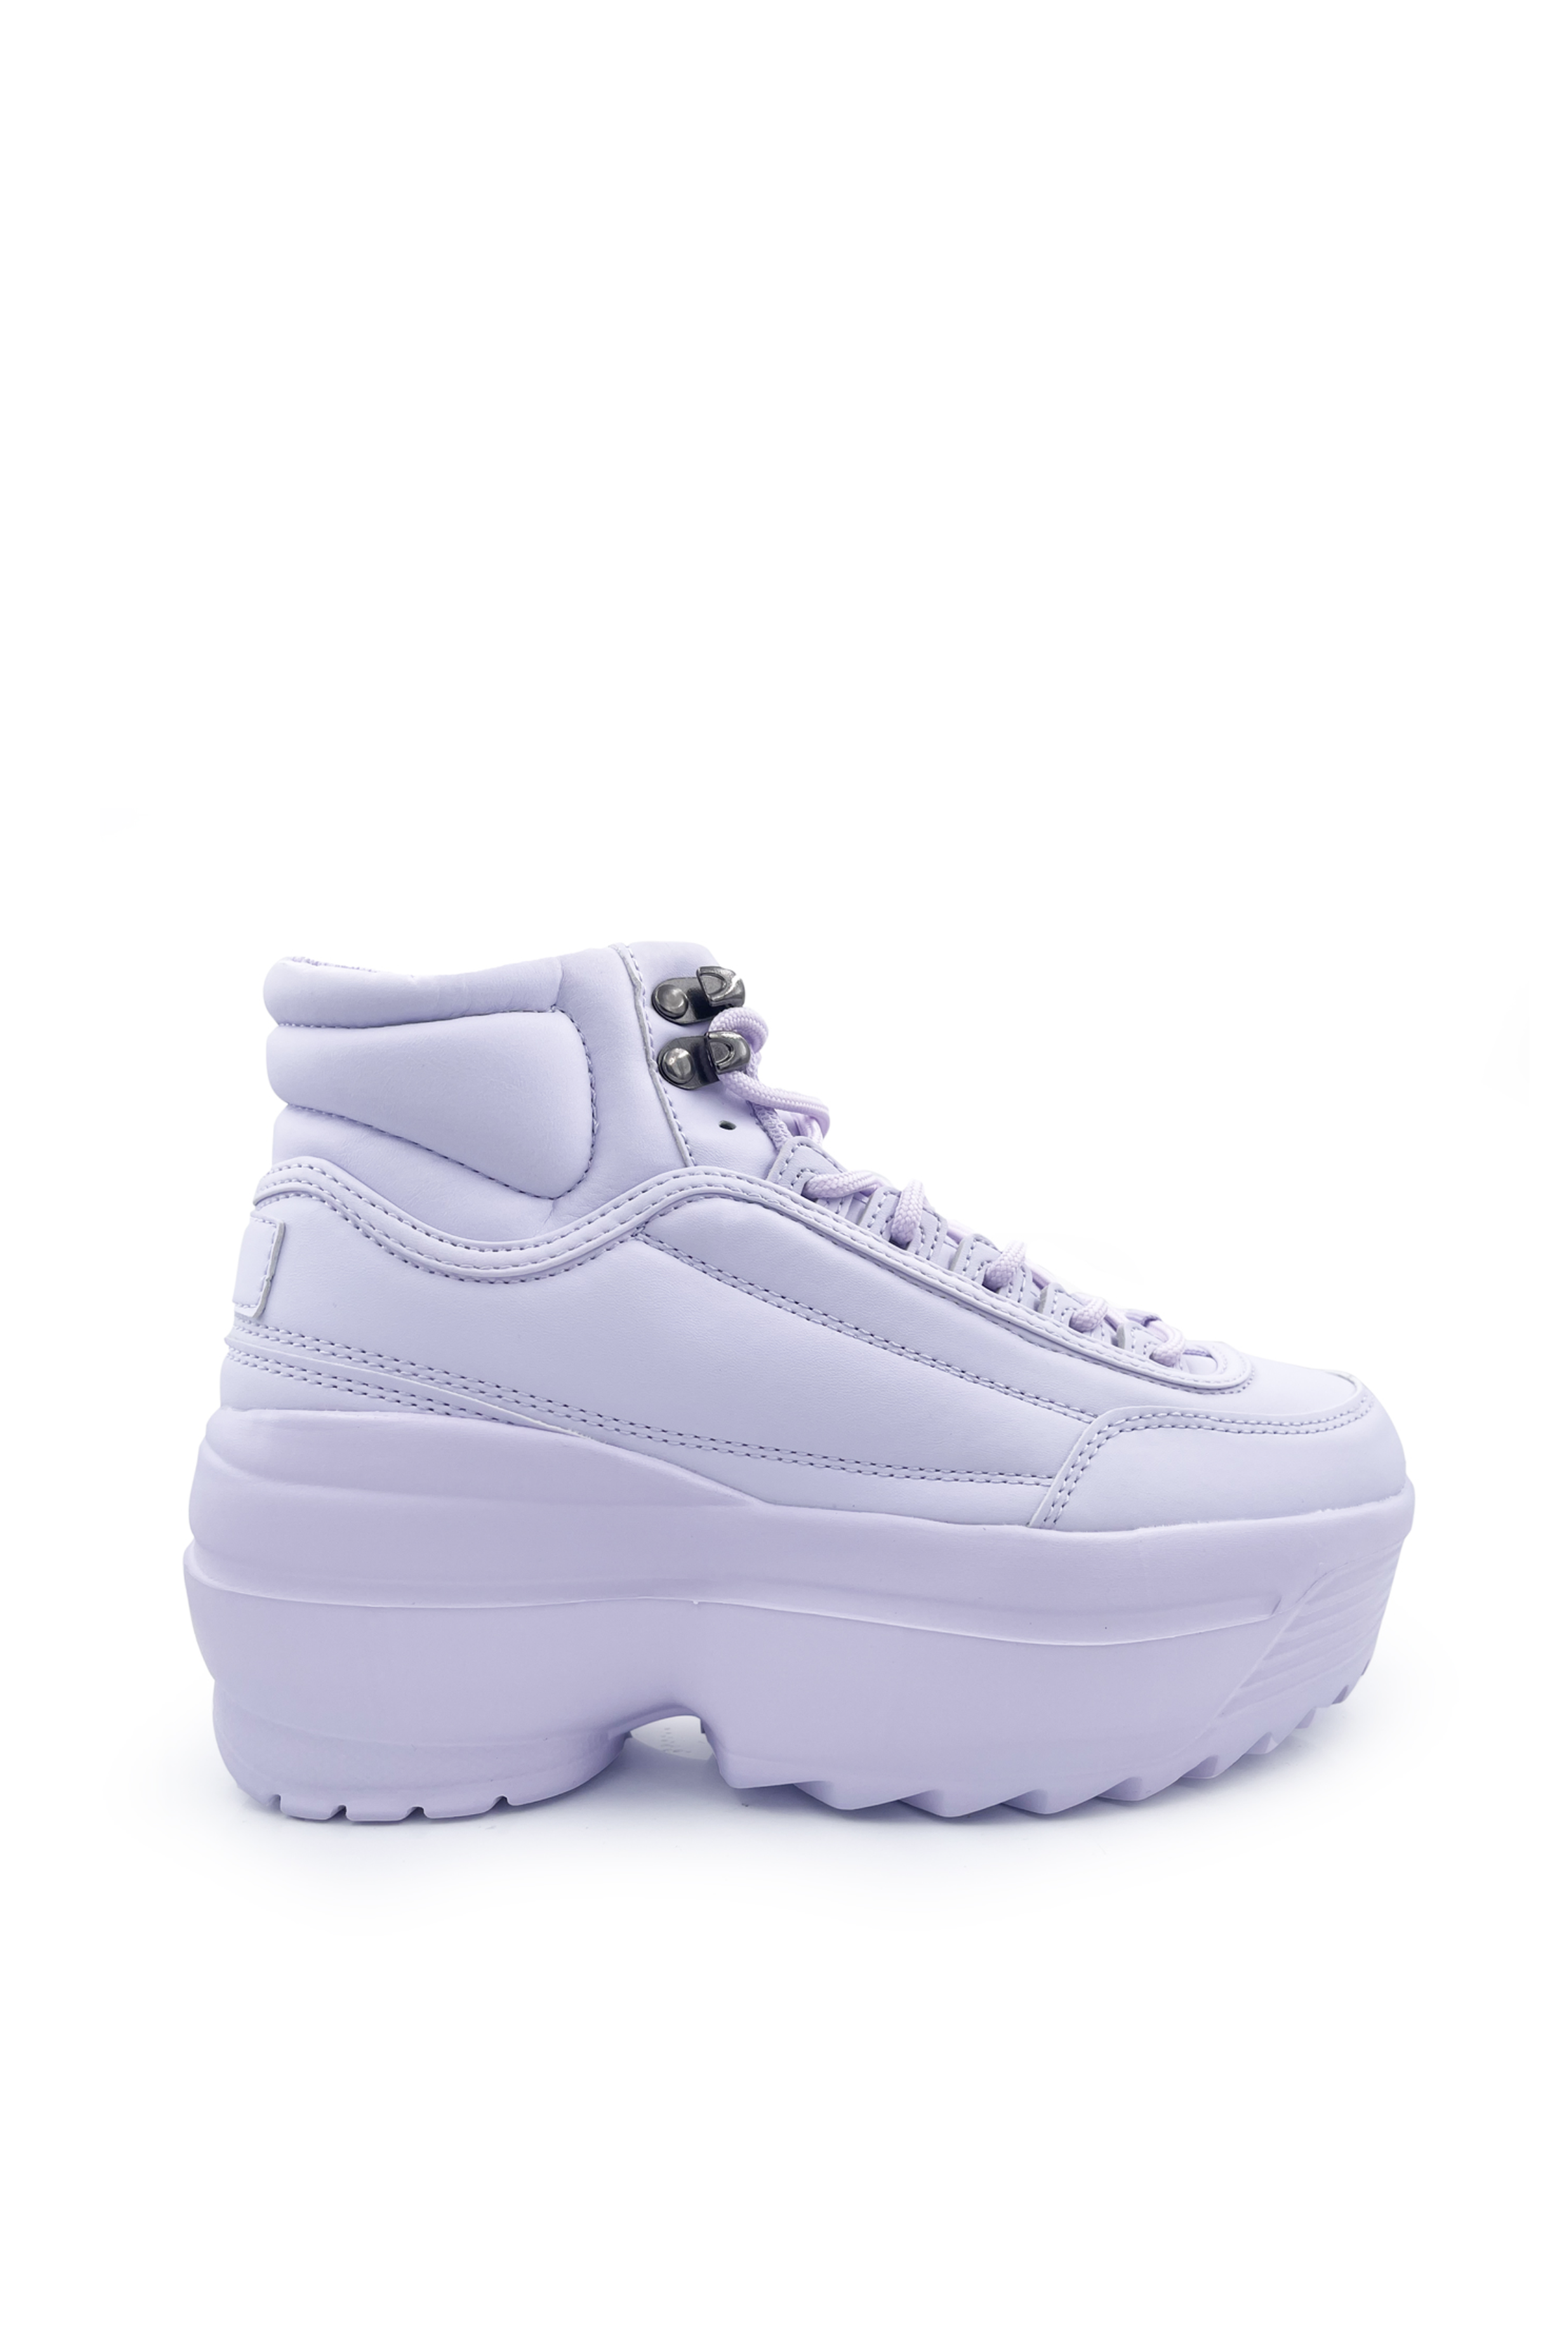 Sammentræf trappe Diligence Lavender Hi-Top Platform Sneaker - Size 5 left! | My Violet